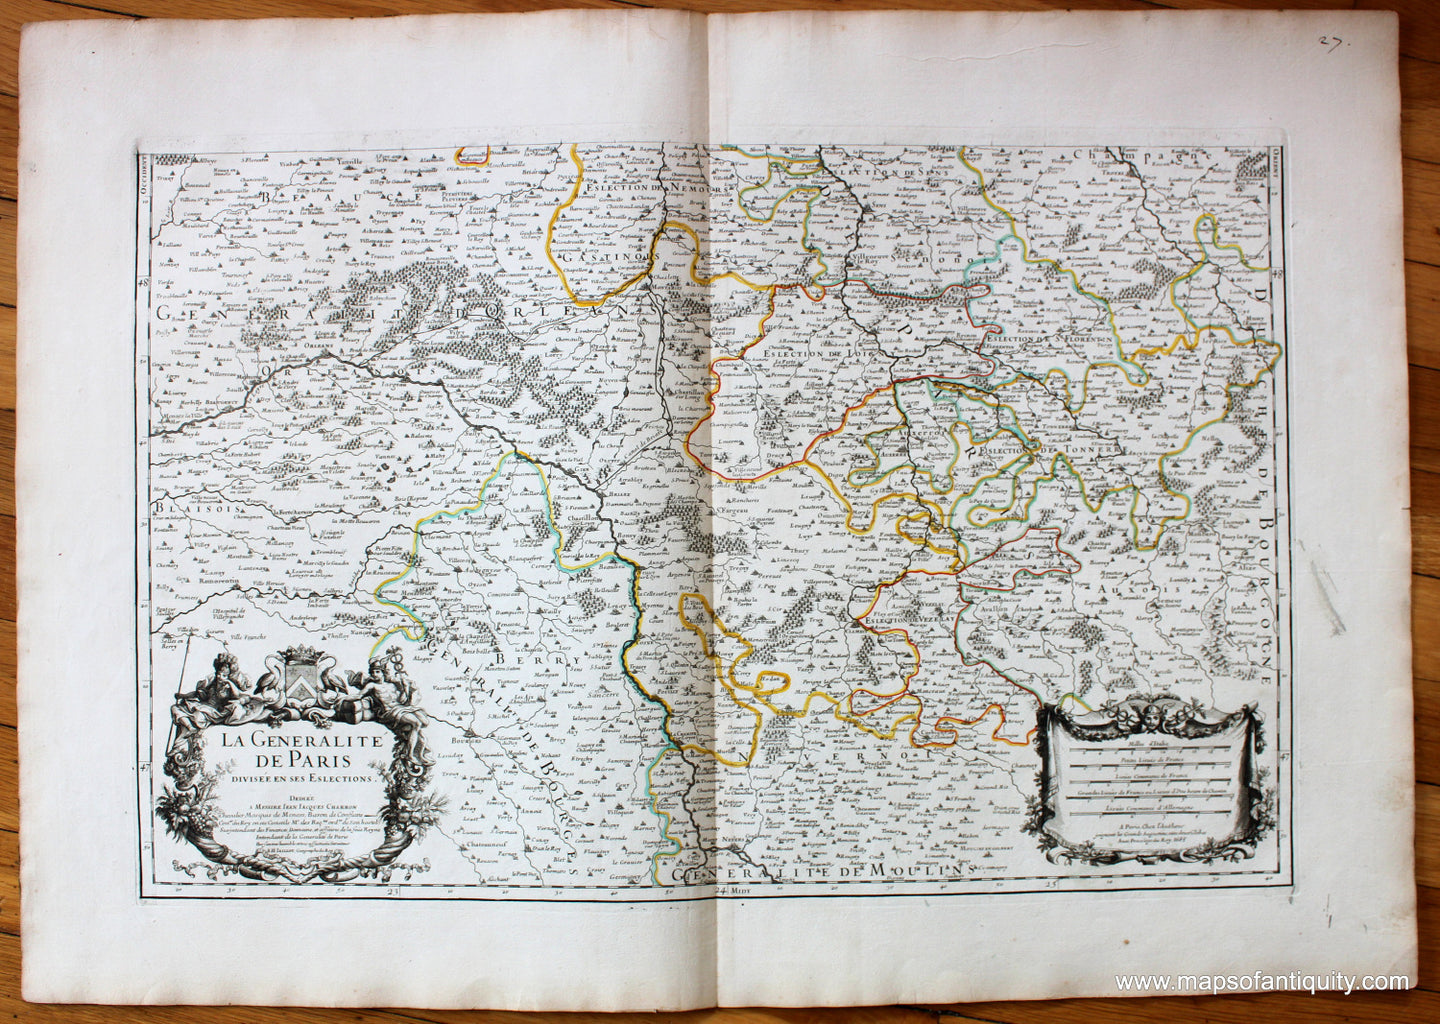 Antique-Hand-Colored-Map-La-Generalite-de-Paris-(Southern-Half)-Europe-France-1695-Jaillot-Maps-Of-Antiquity